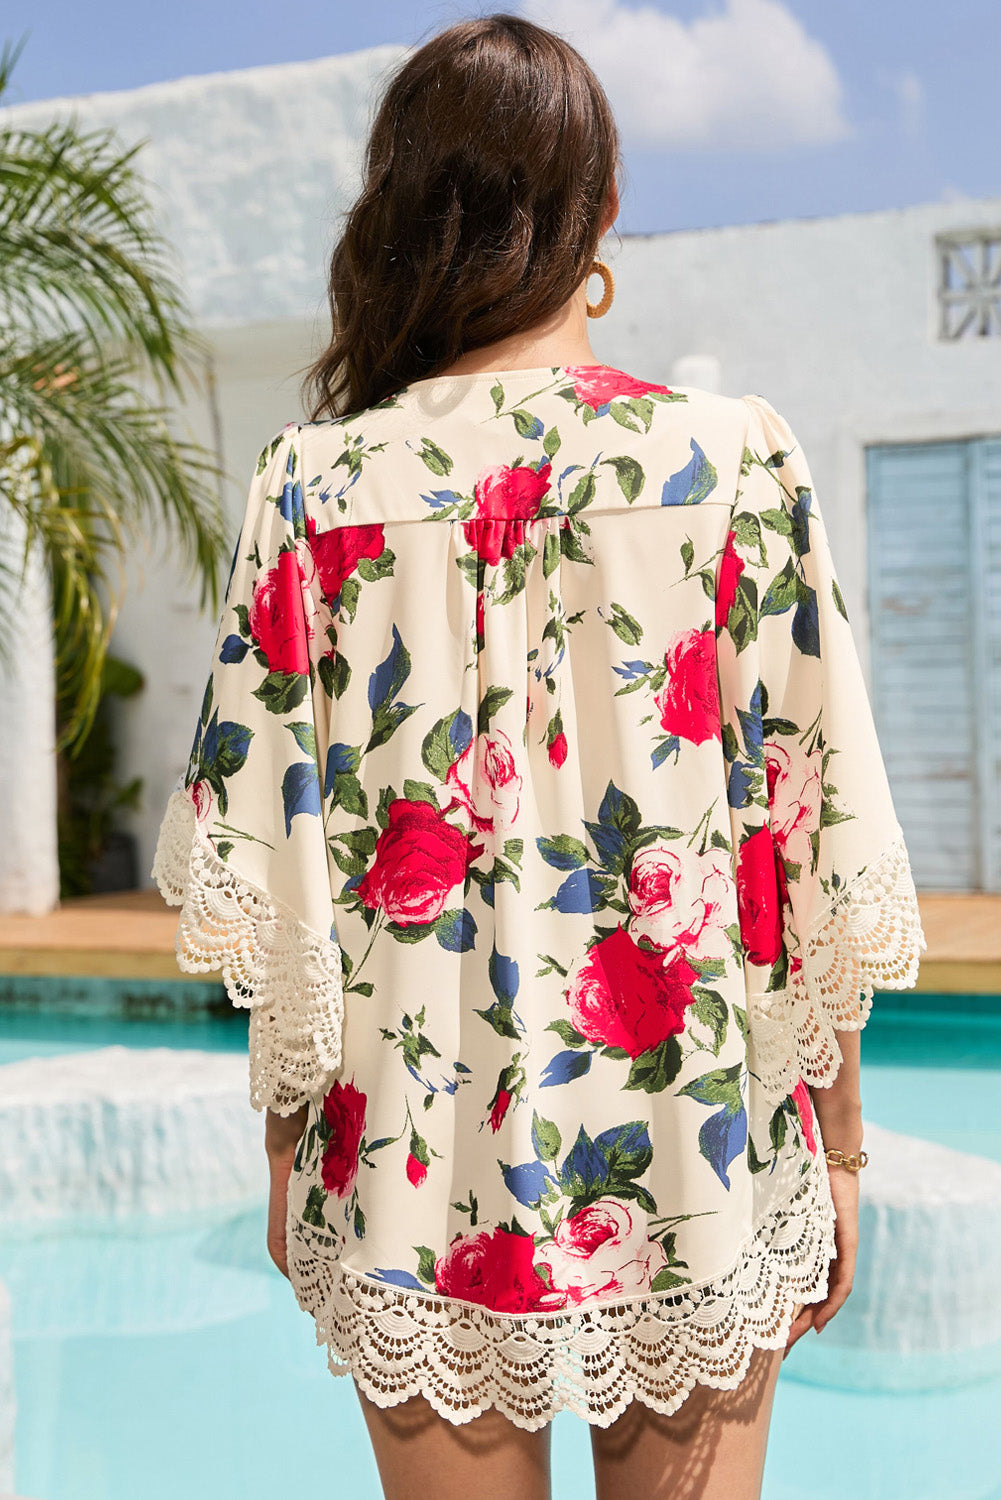 Bež kimono s cvetličnim vzorcem in čipkastim narezkom